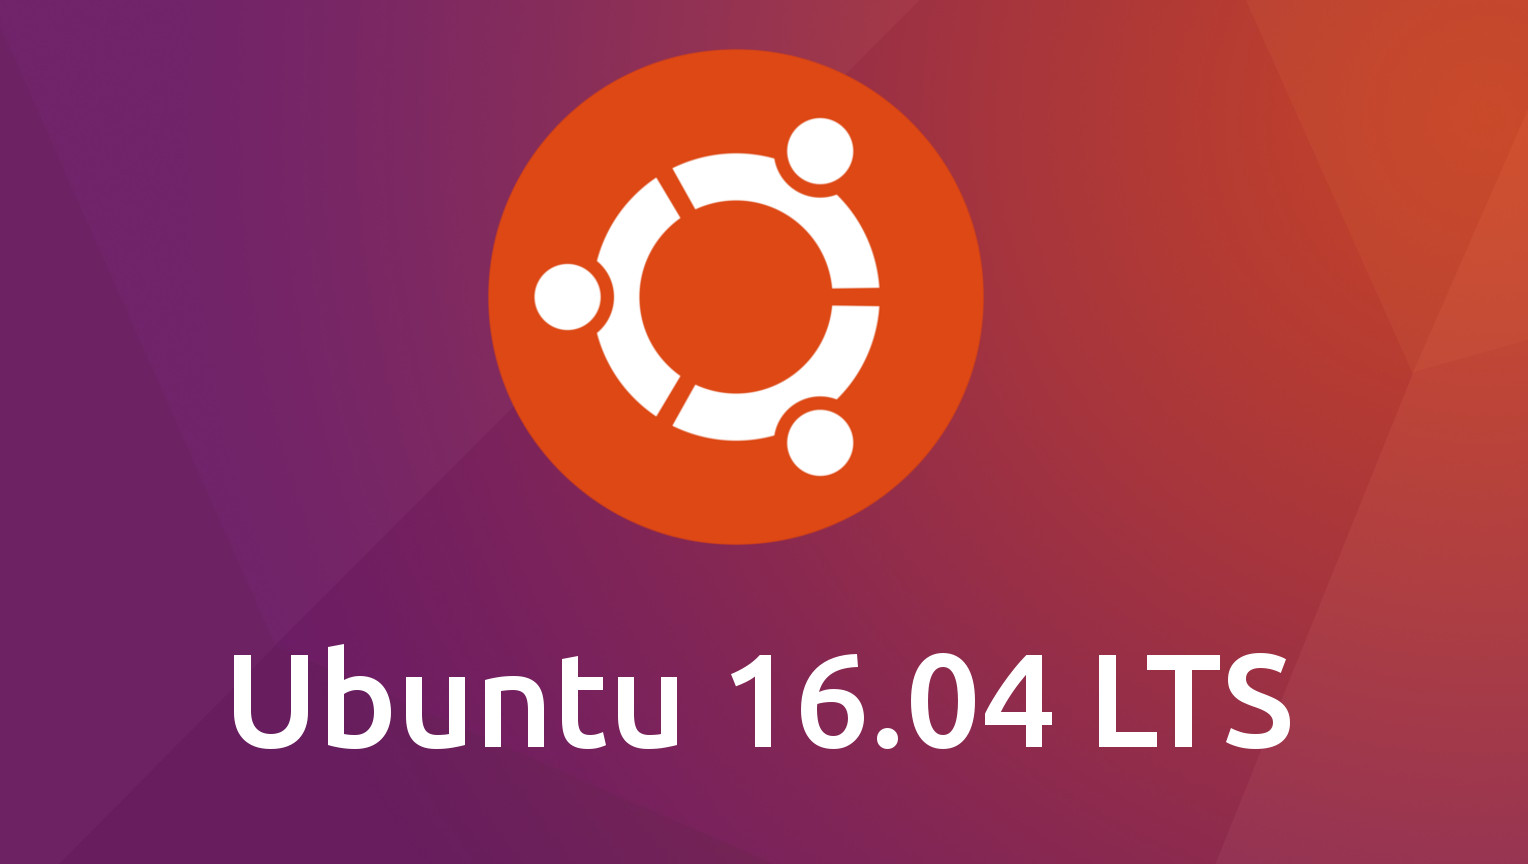 输入法 ubuntu ibus_输入法哪个好用_输入法变成繁体字怎么办